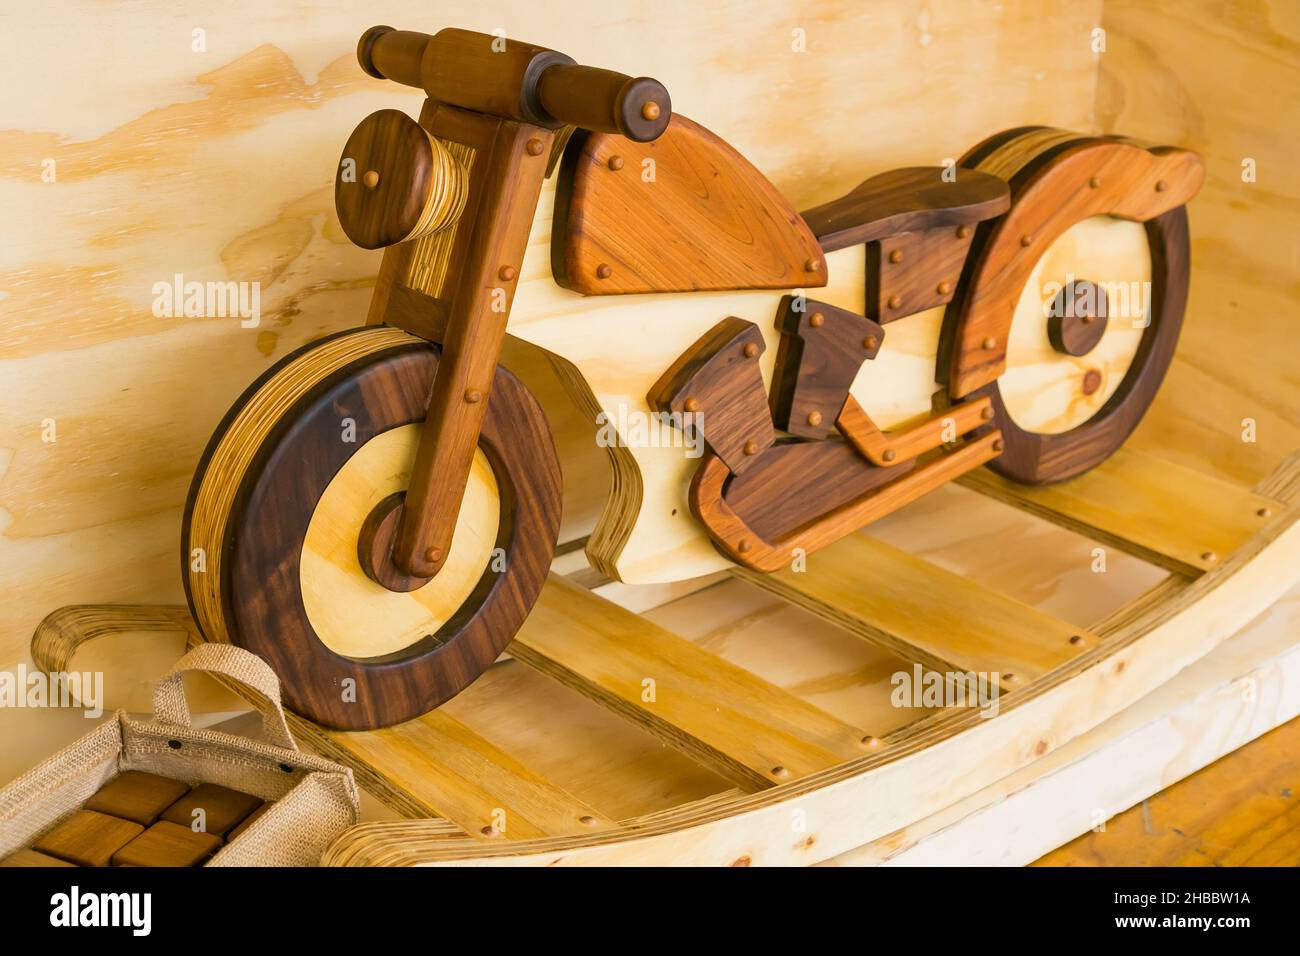 JOHANNESBURG, SUD AFRICA - 19 ottobre 2021: Un primo piano di una moto di legno esposta in uno stand espositore in una fiera del design fatta a mano Foto Stock